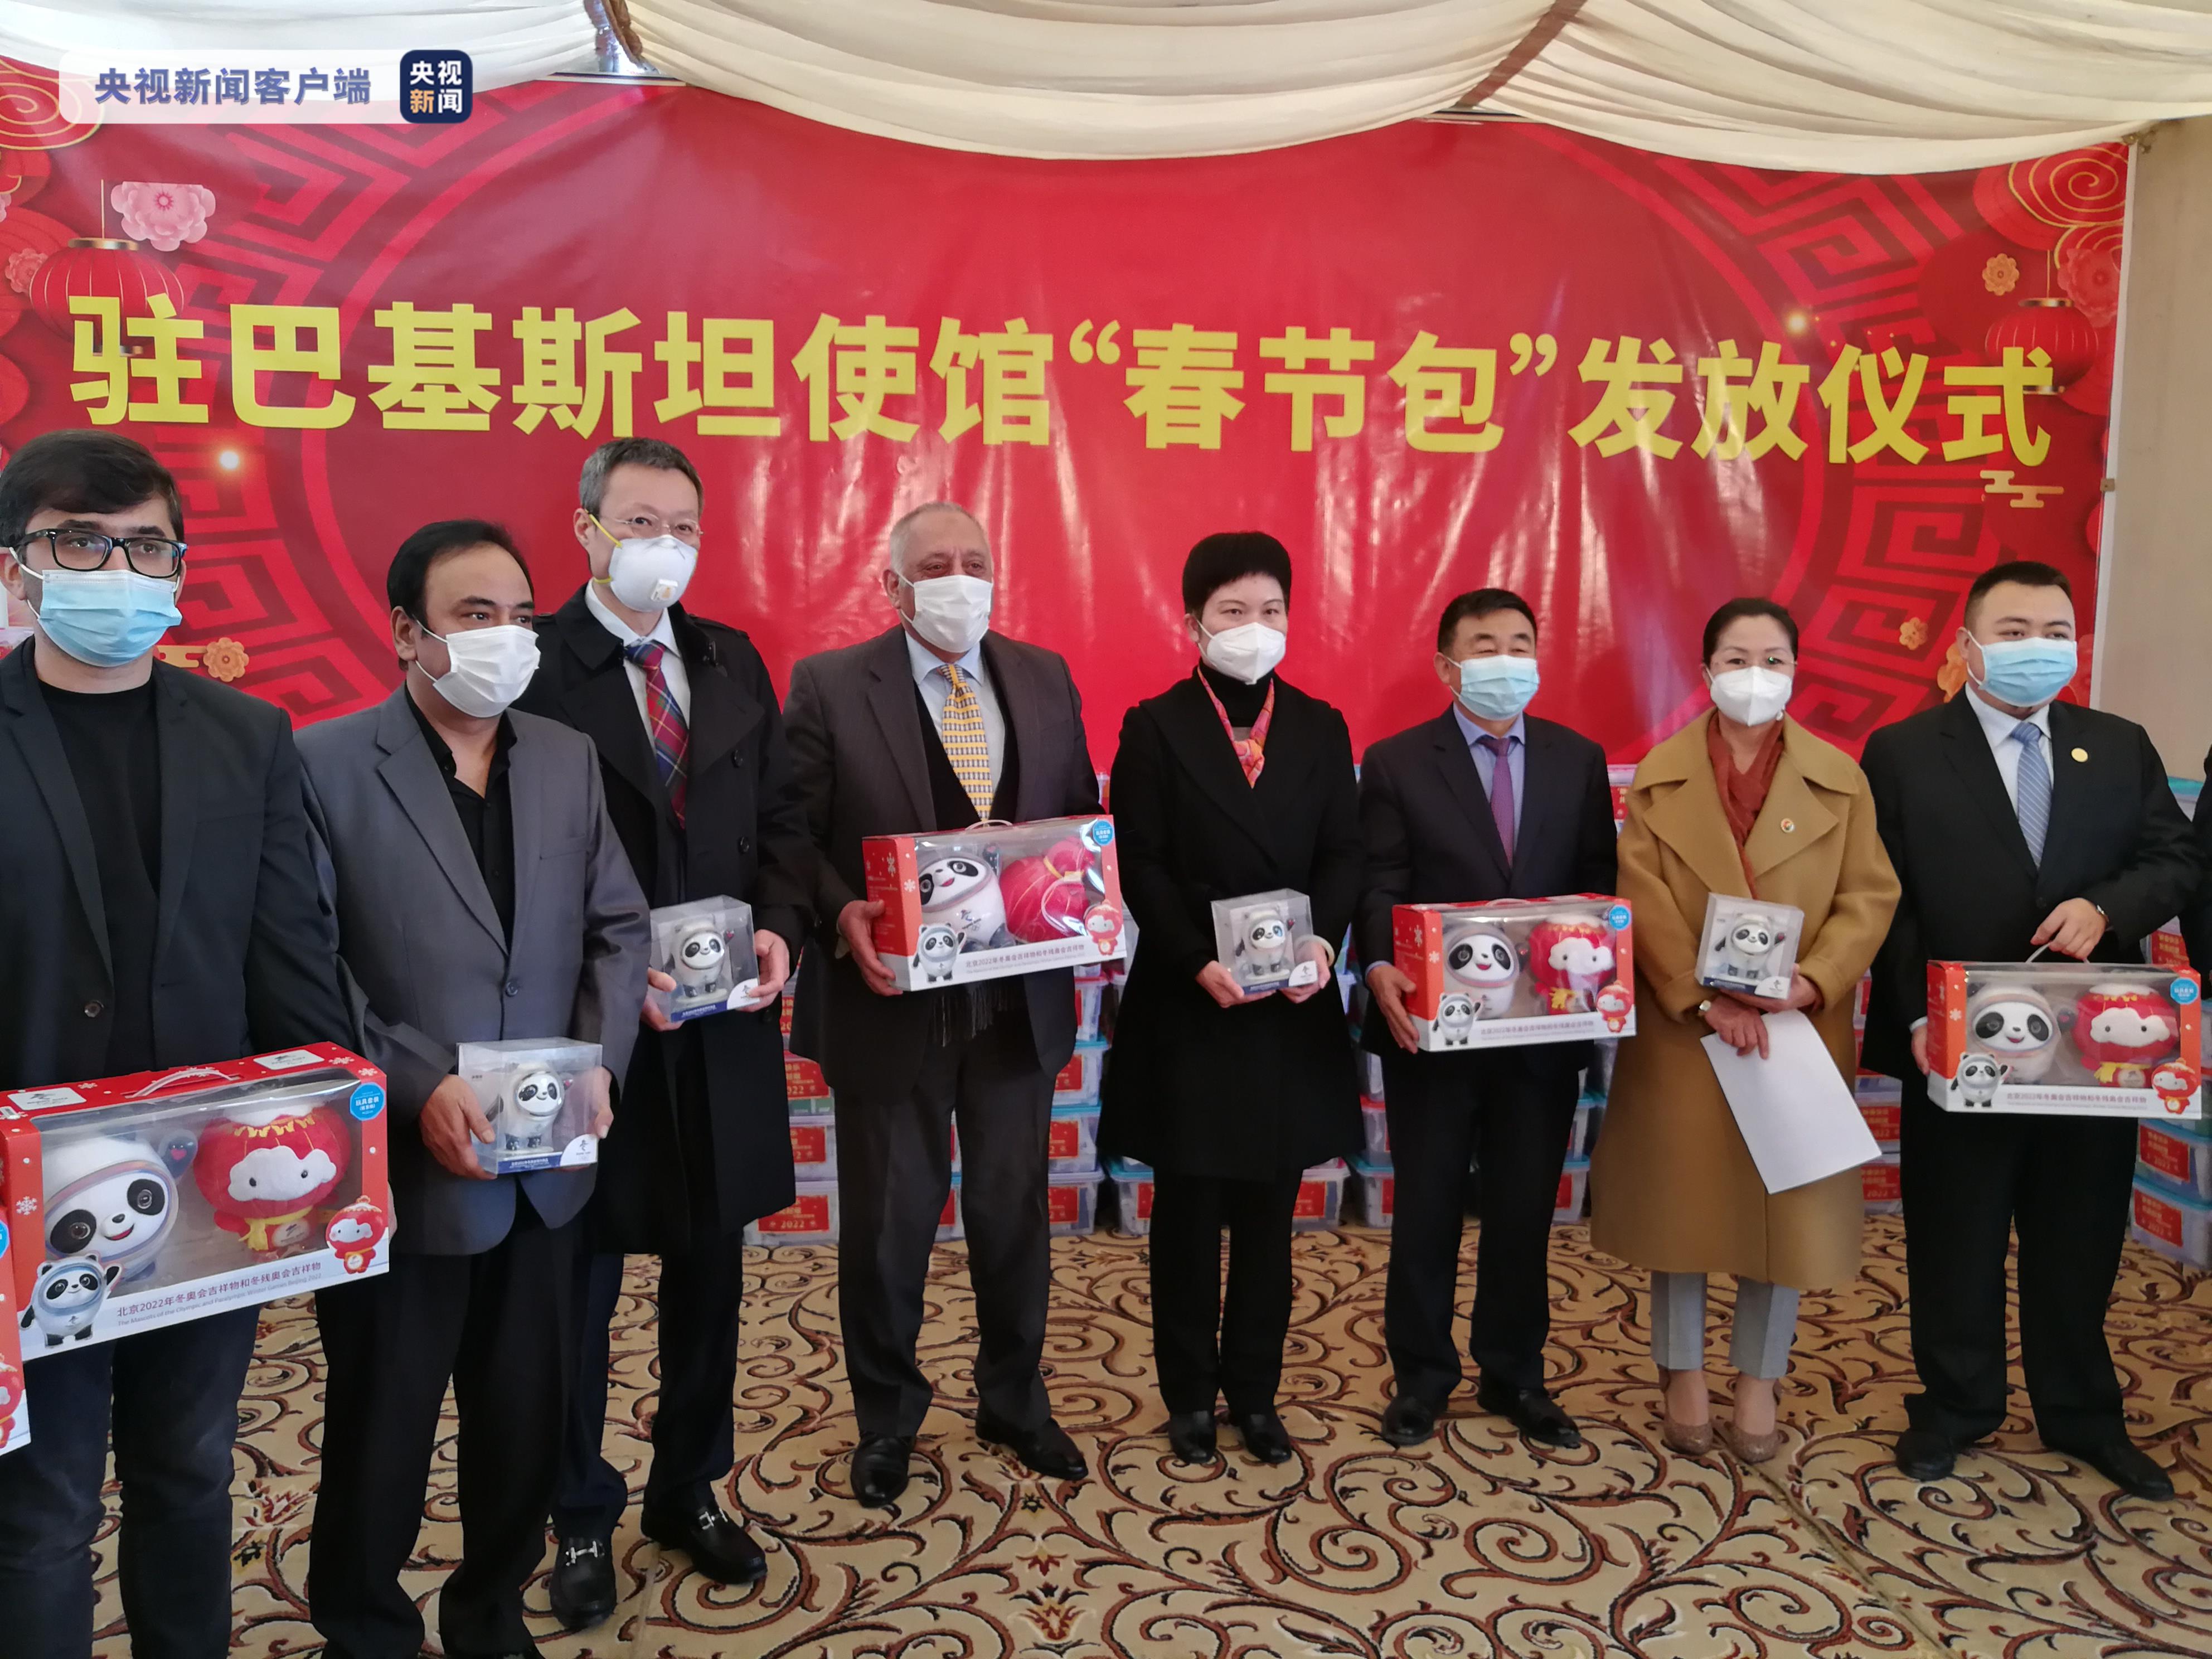 19日,中国驻巴基斯坦大使馆向在巴华人华侨和留学生发放了大约600份